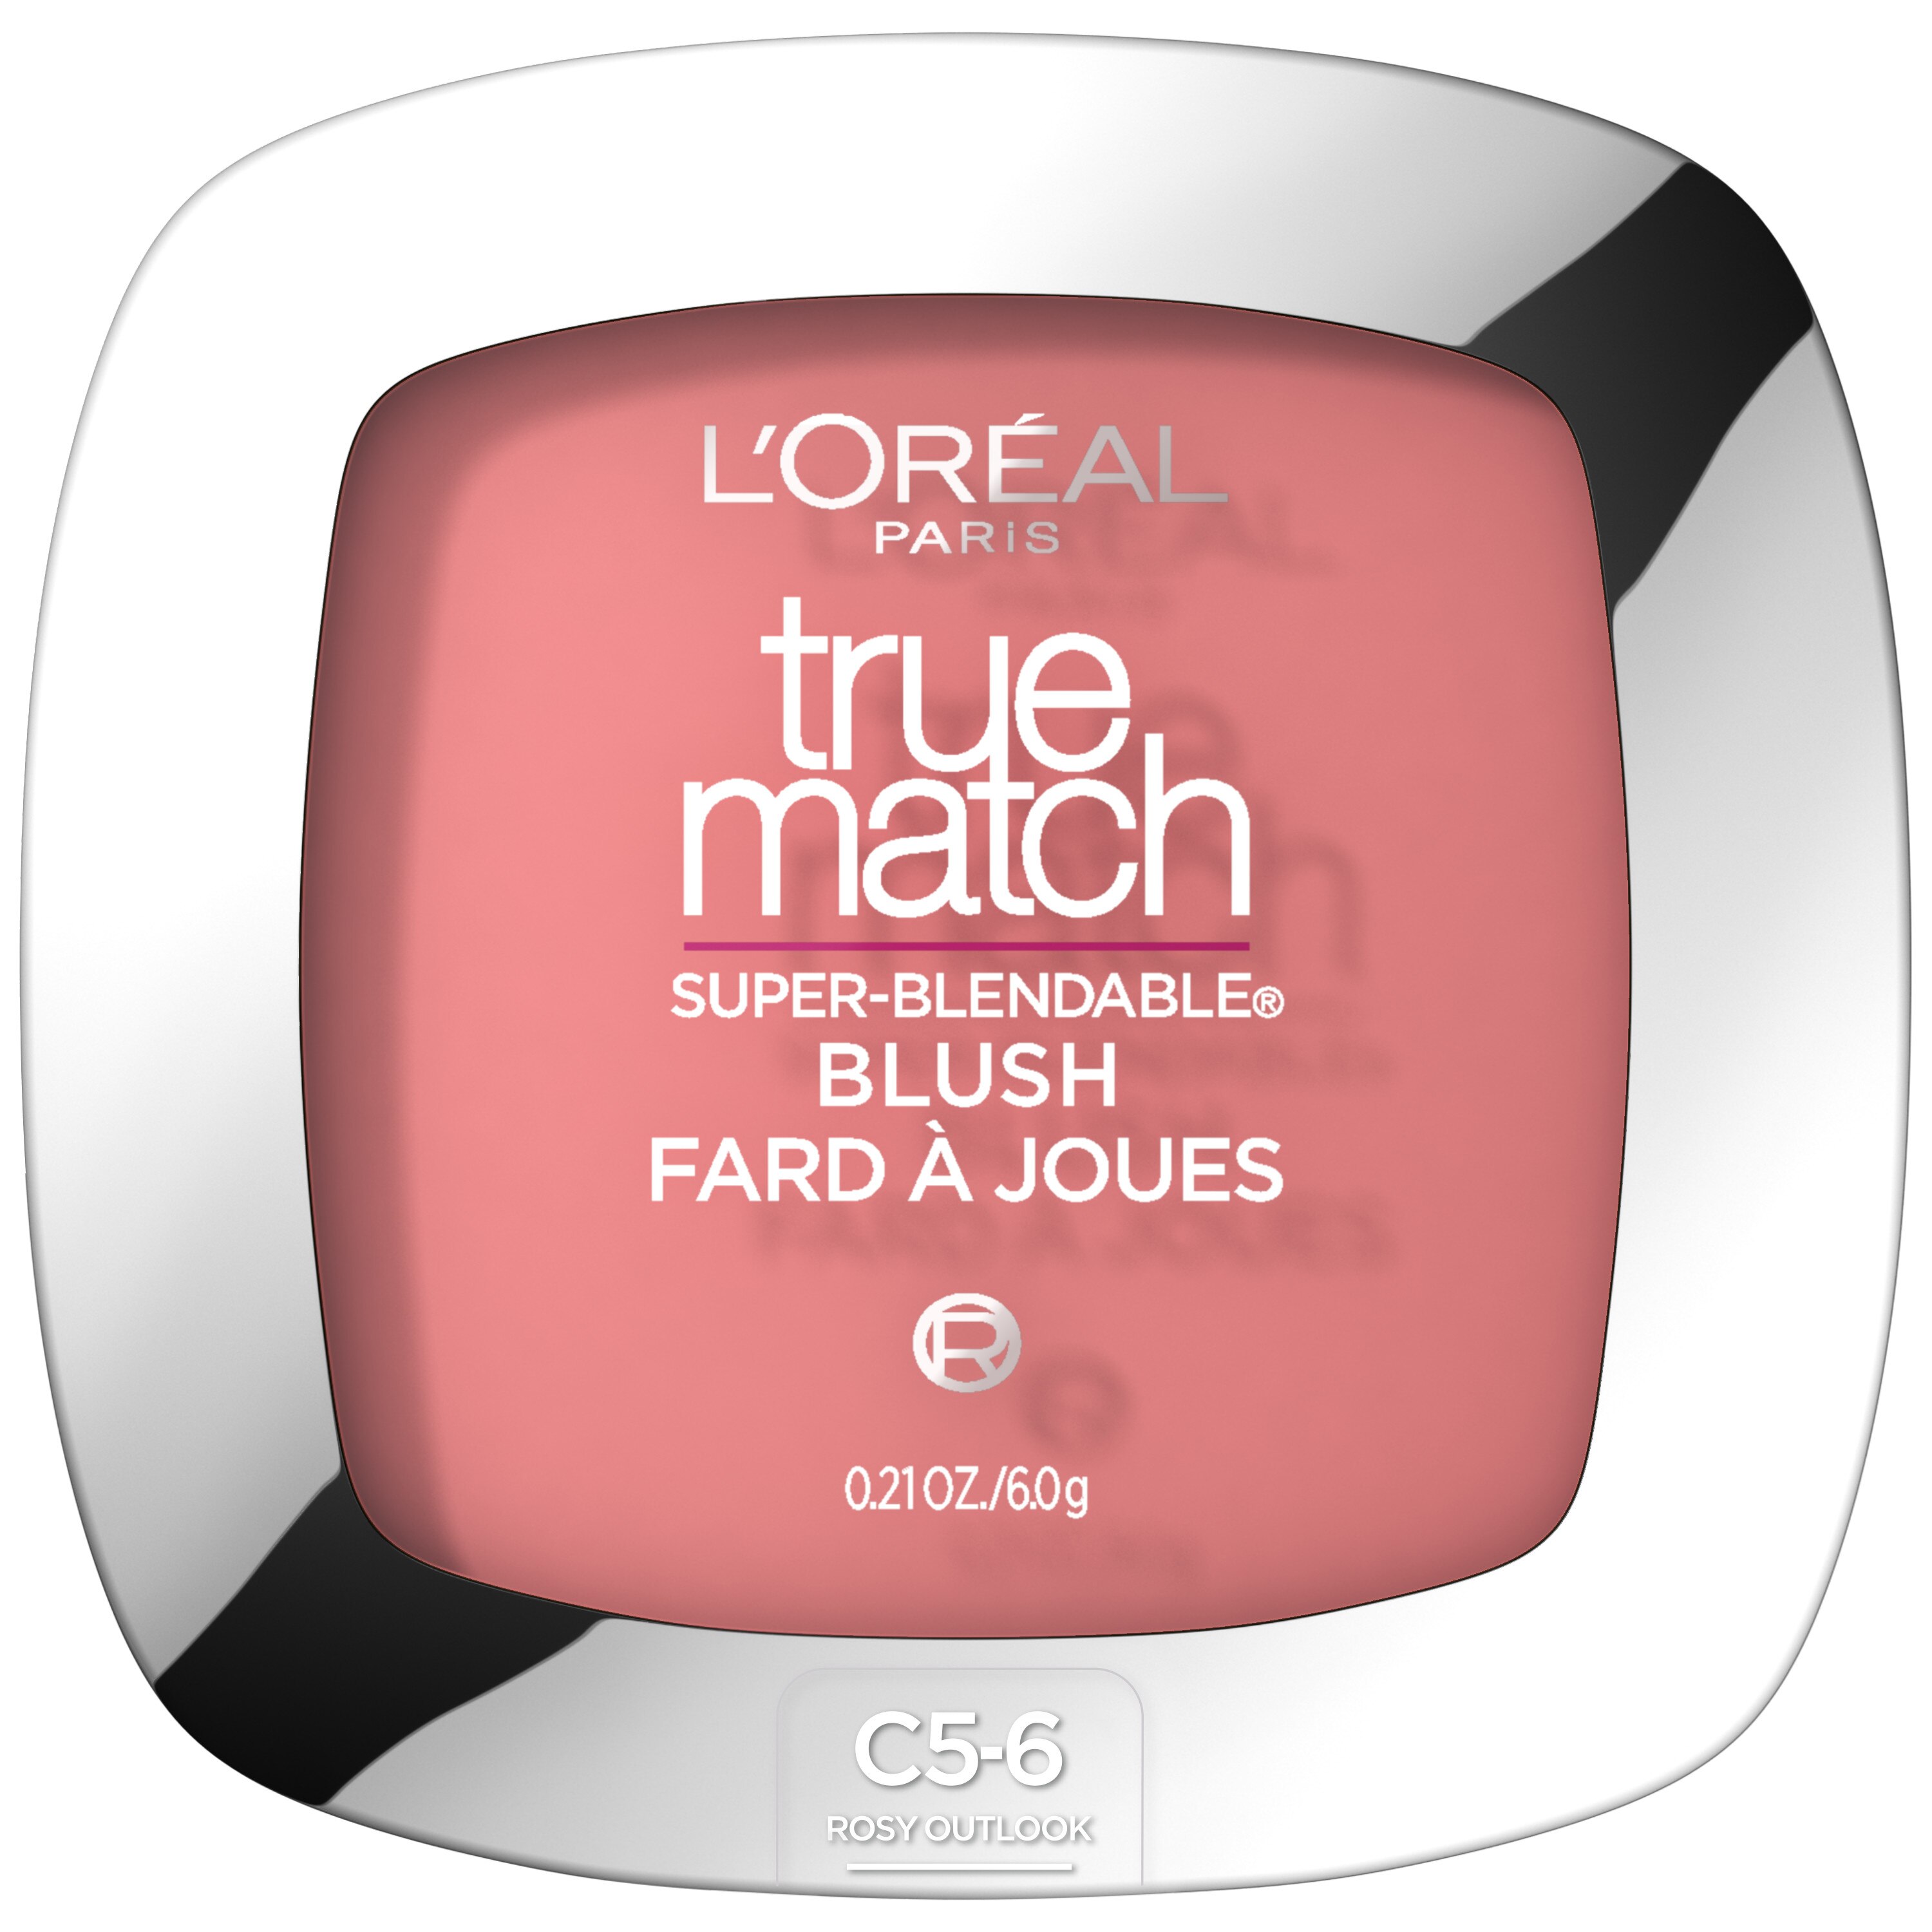 L'Oreal Paris True Match Super-Blendable Blush, C5-6 Rosy Outlook , CVS